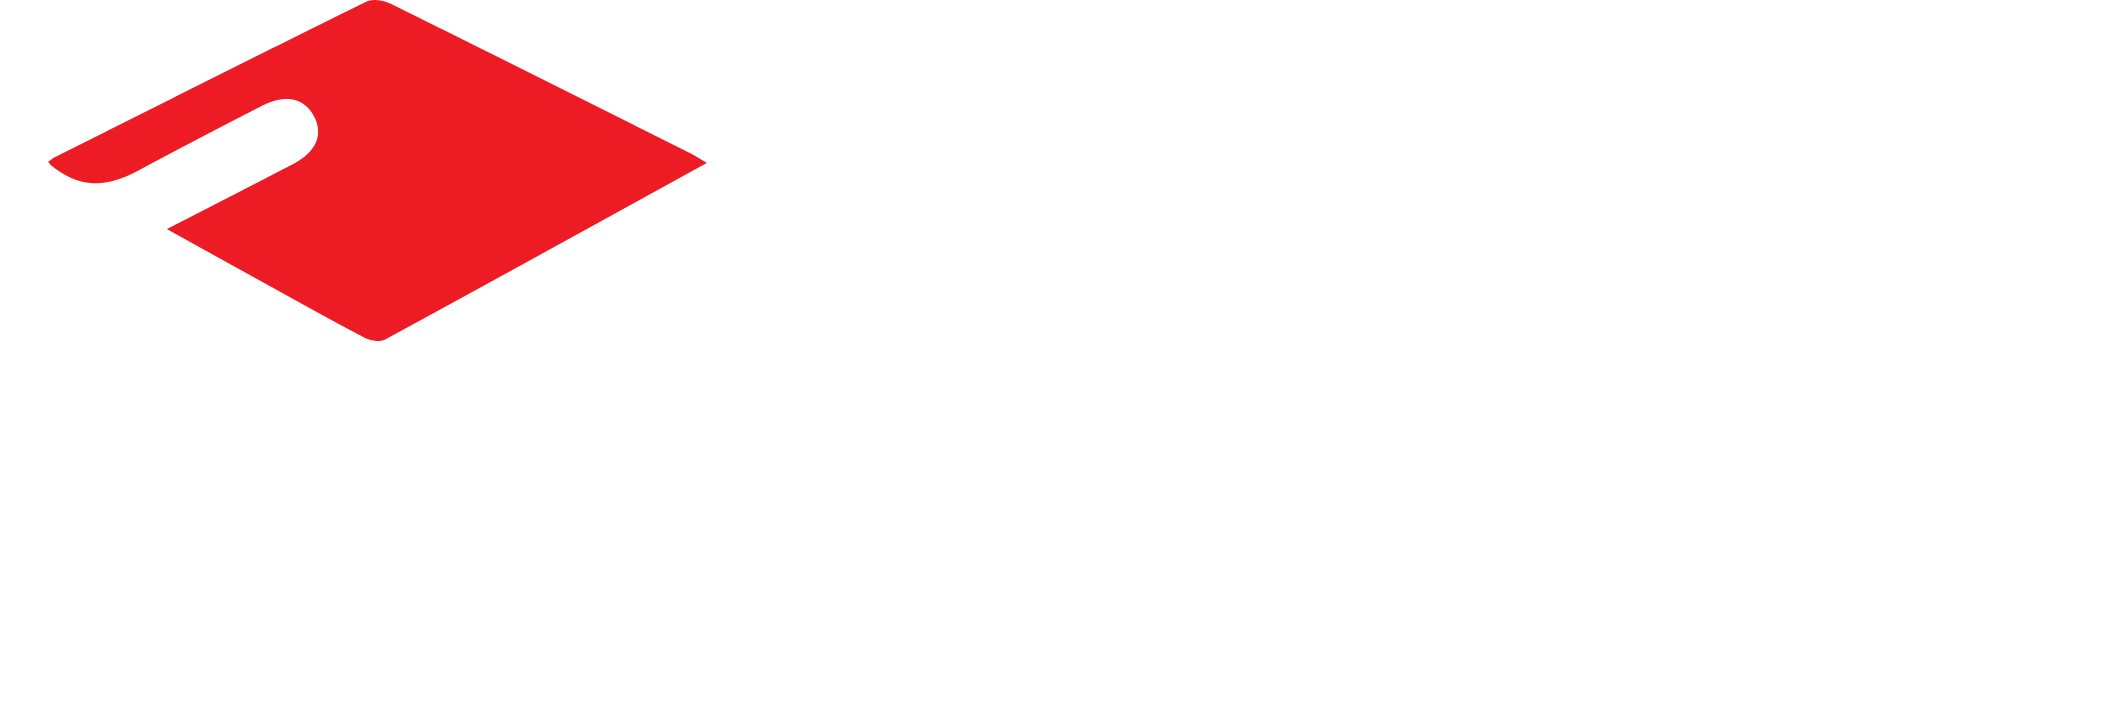 Youbrio Tutor Room